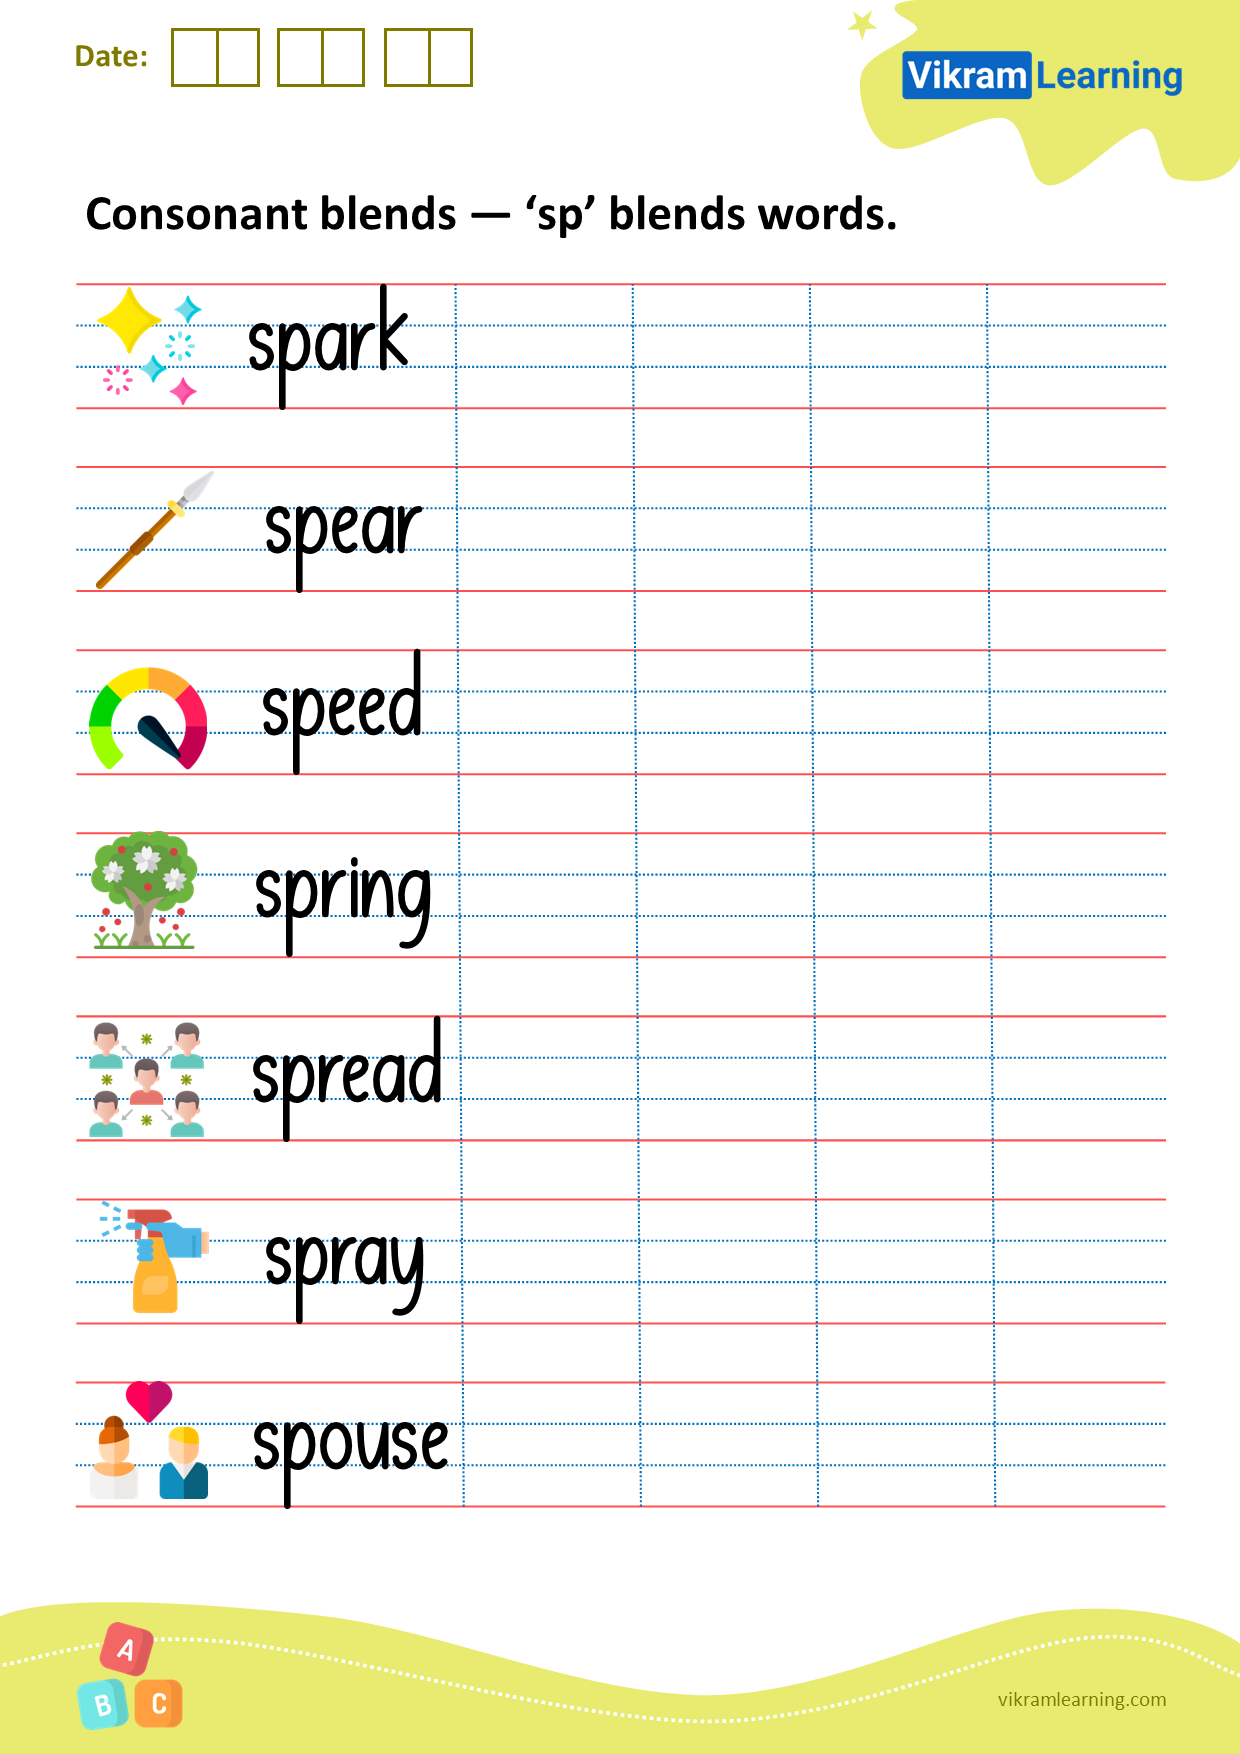 Download consonant blends — ‘sp’ blend words worksheets